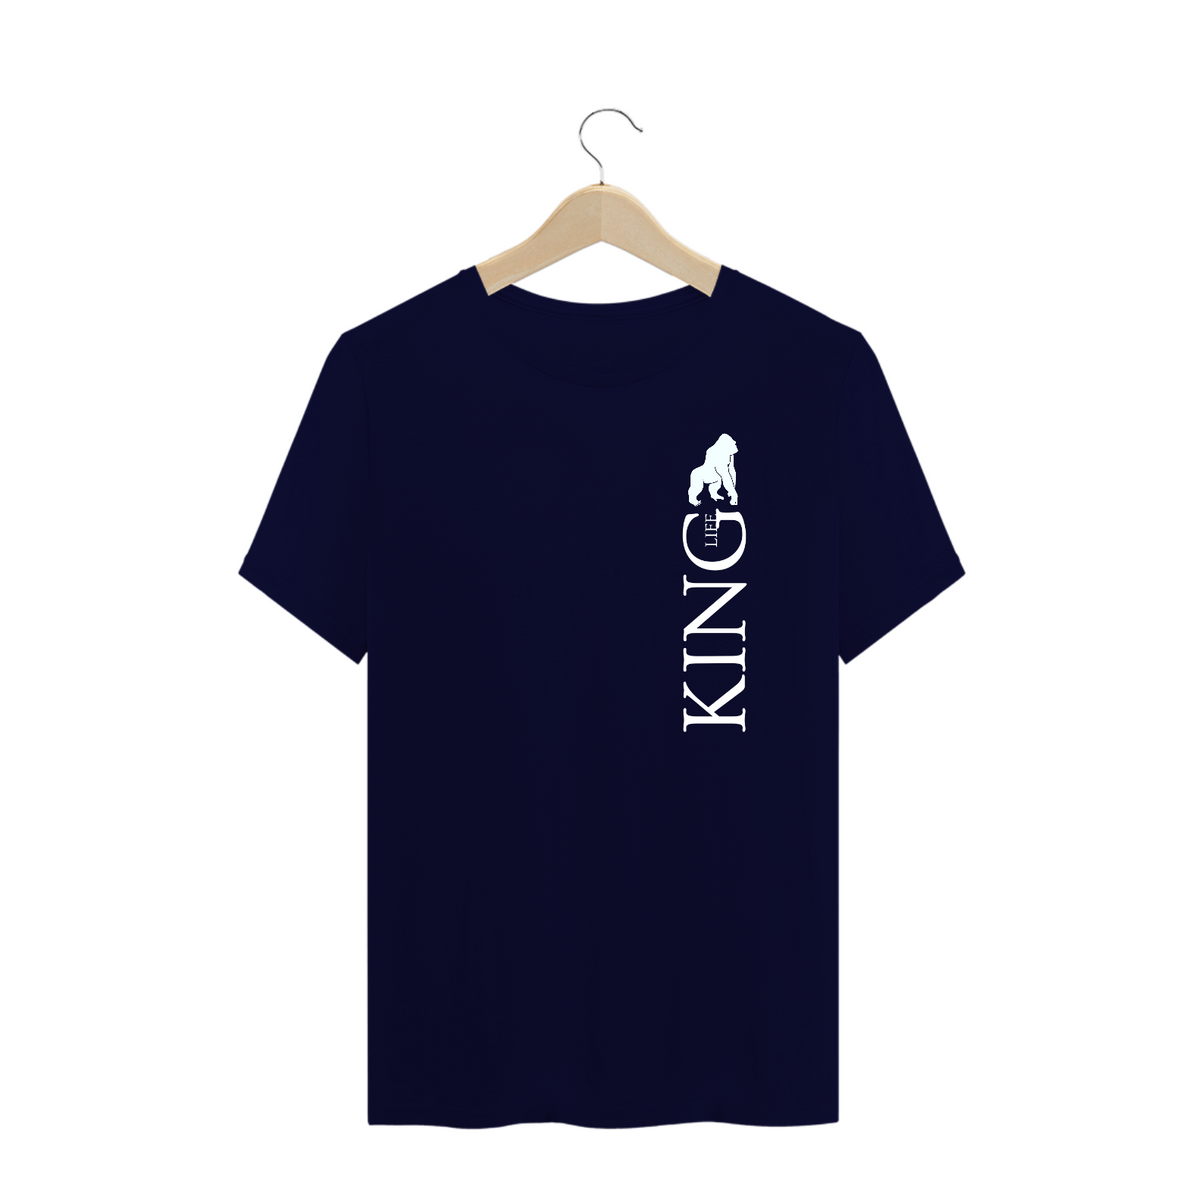 Nome do produto: Camiseta King Life Plus